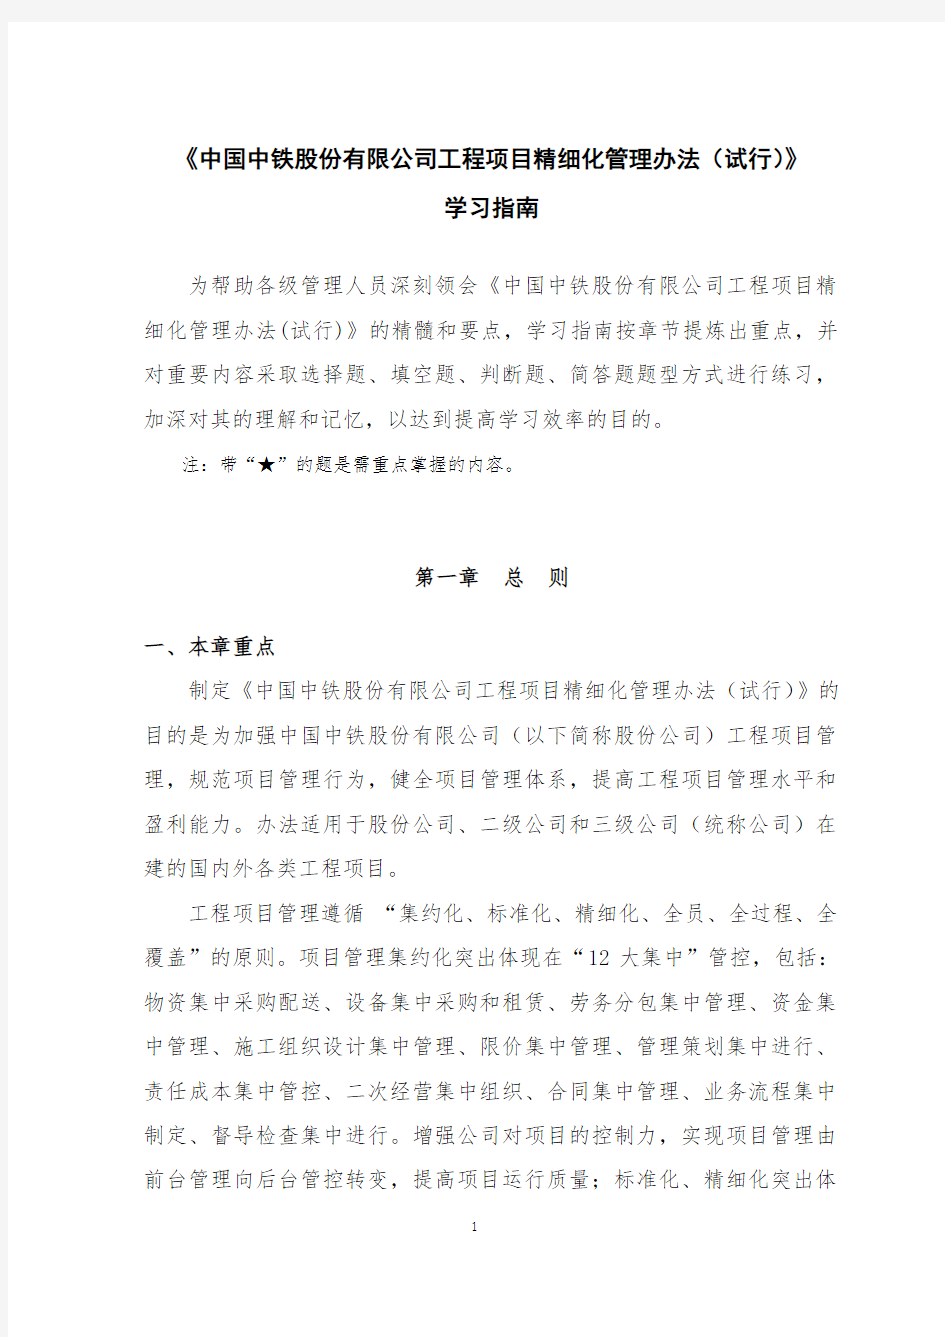 《中国中铁股份有限公司工程项目精细化管理办法(试行)》学习指南